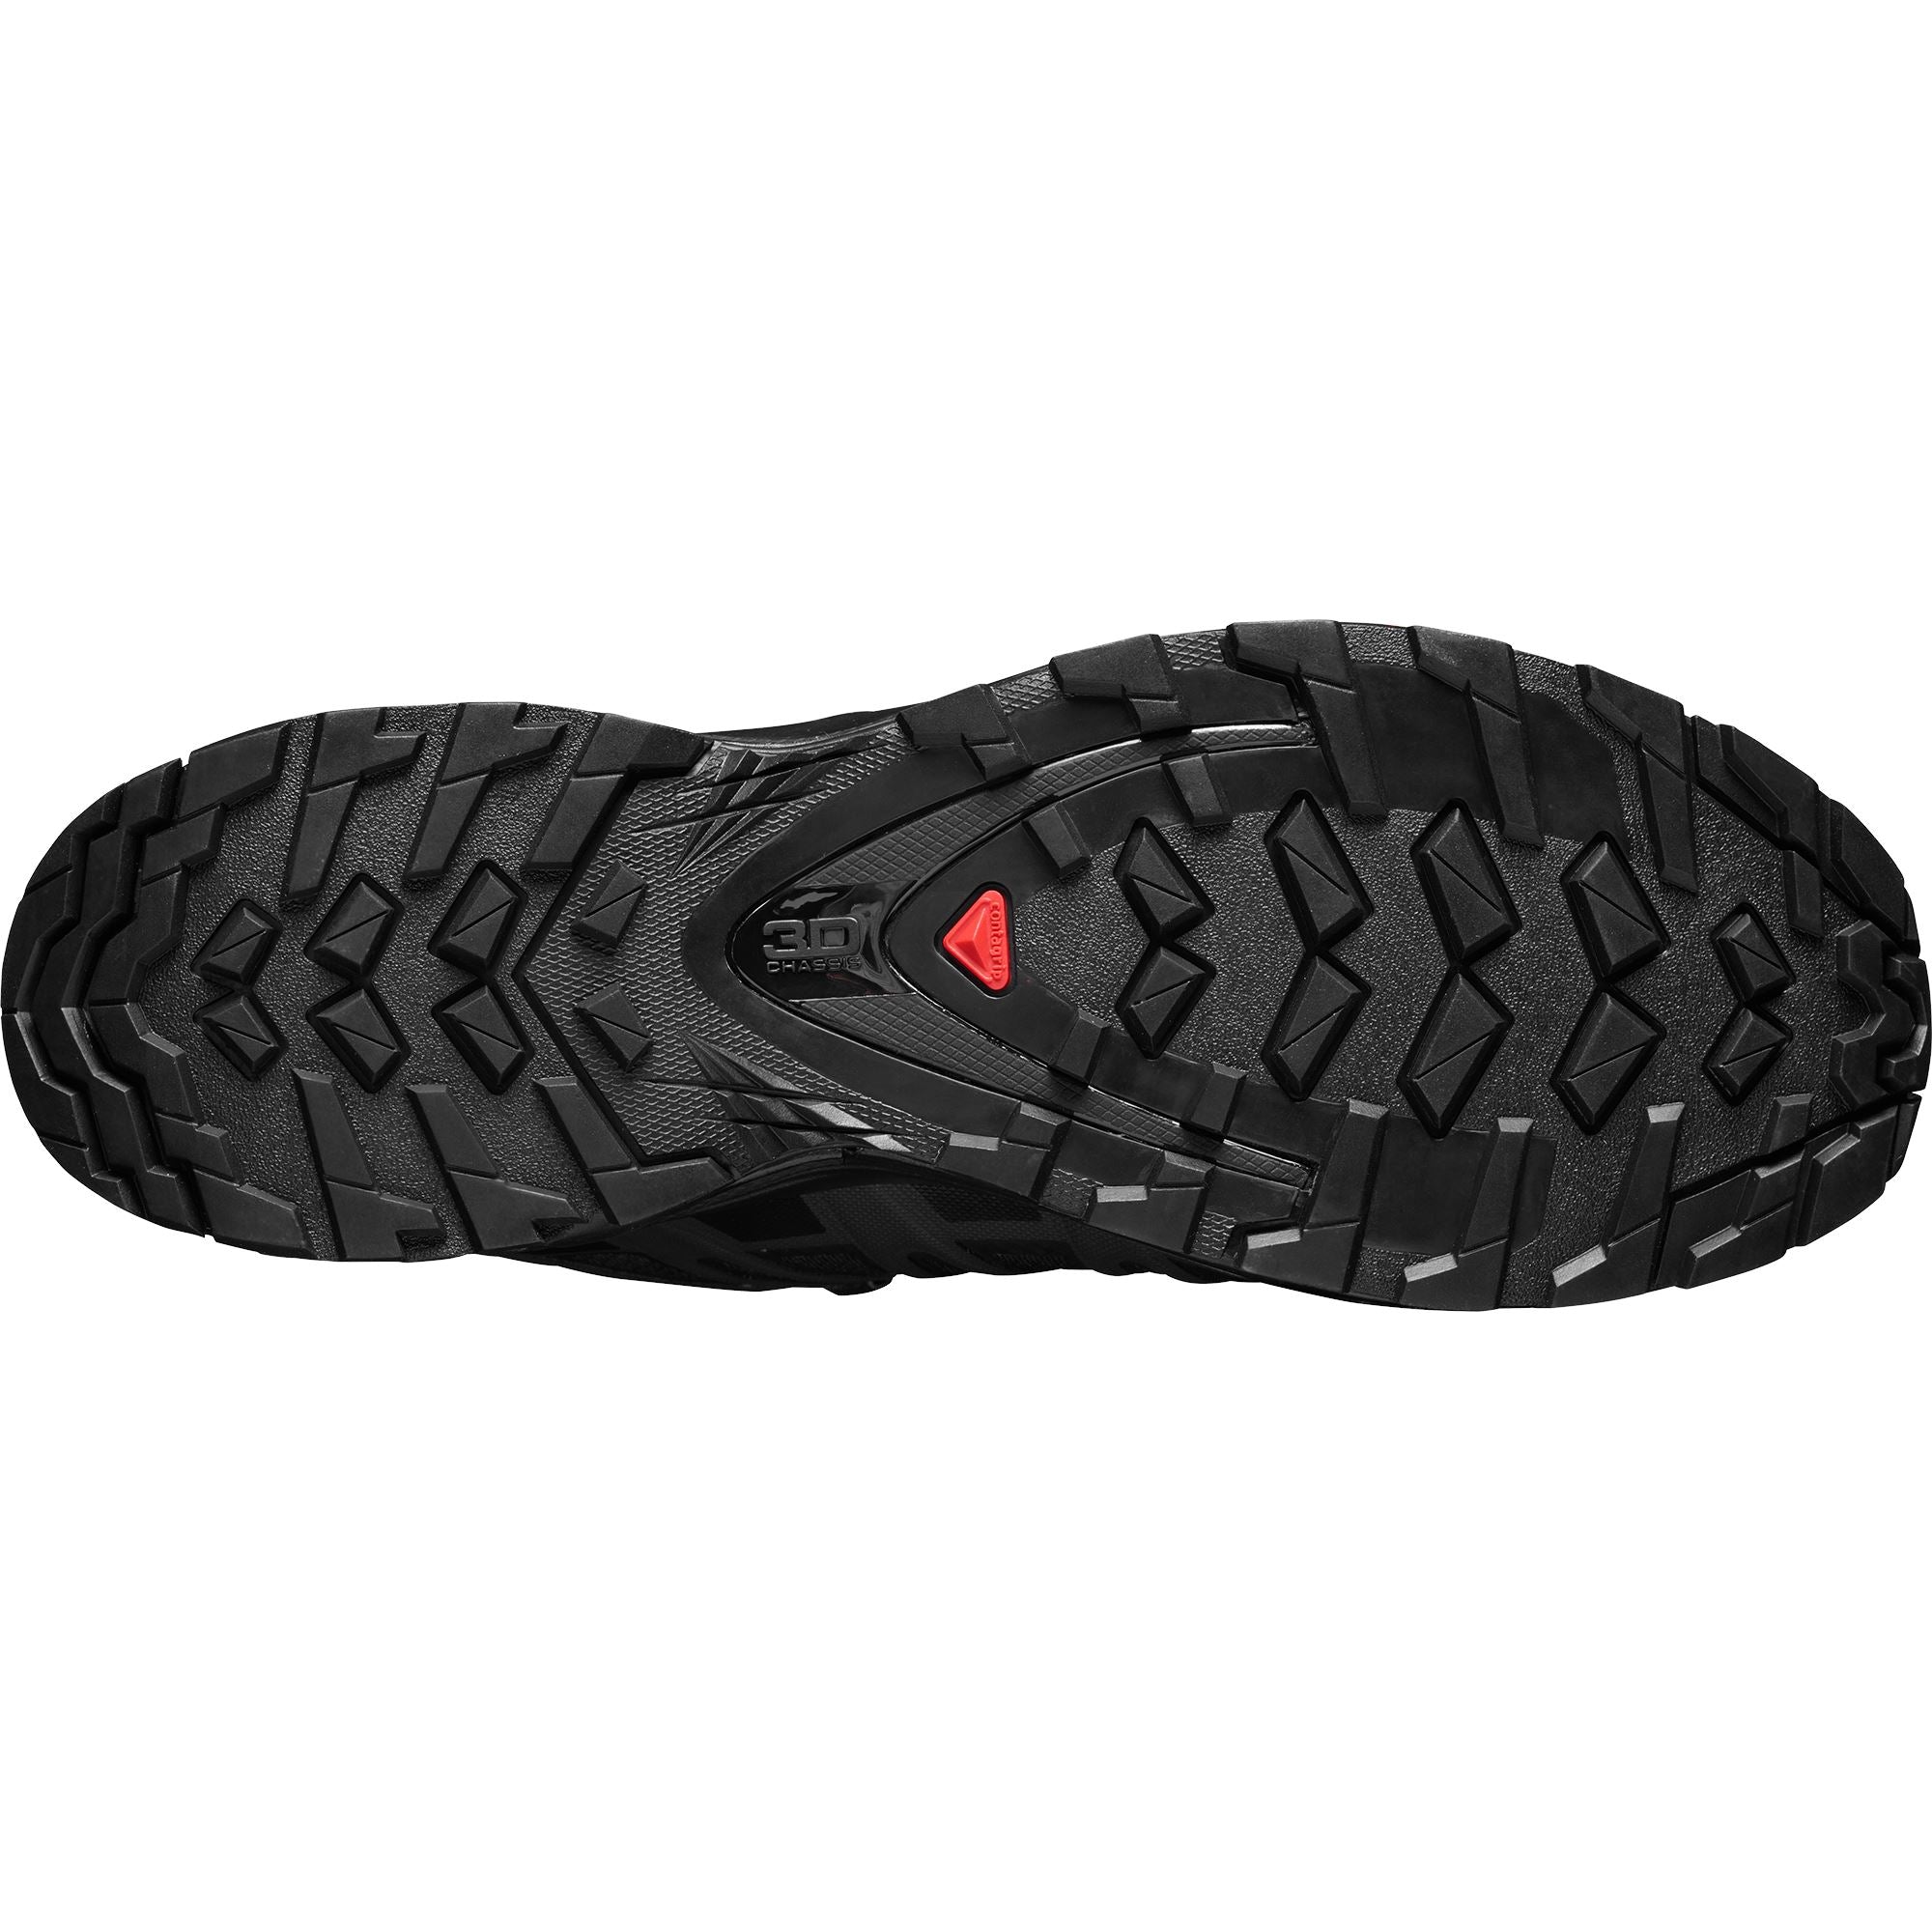 Salomon XA Pro 3D V8 GTX Women's Trail Running Shoes Black/Black/Phantom US 6 